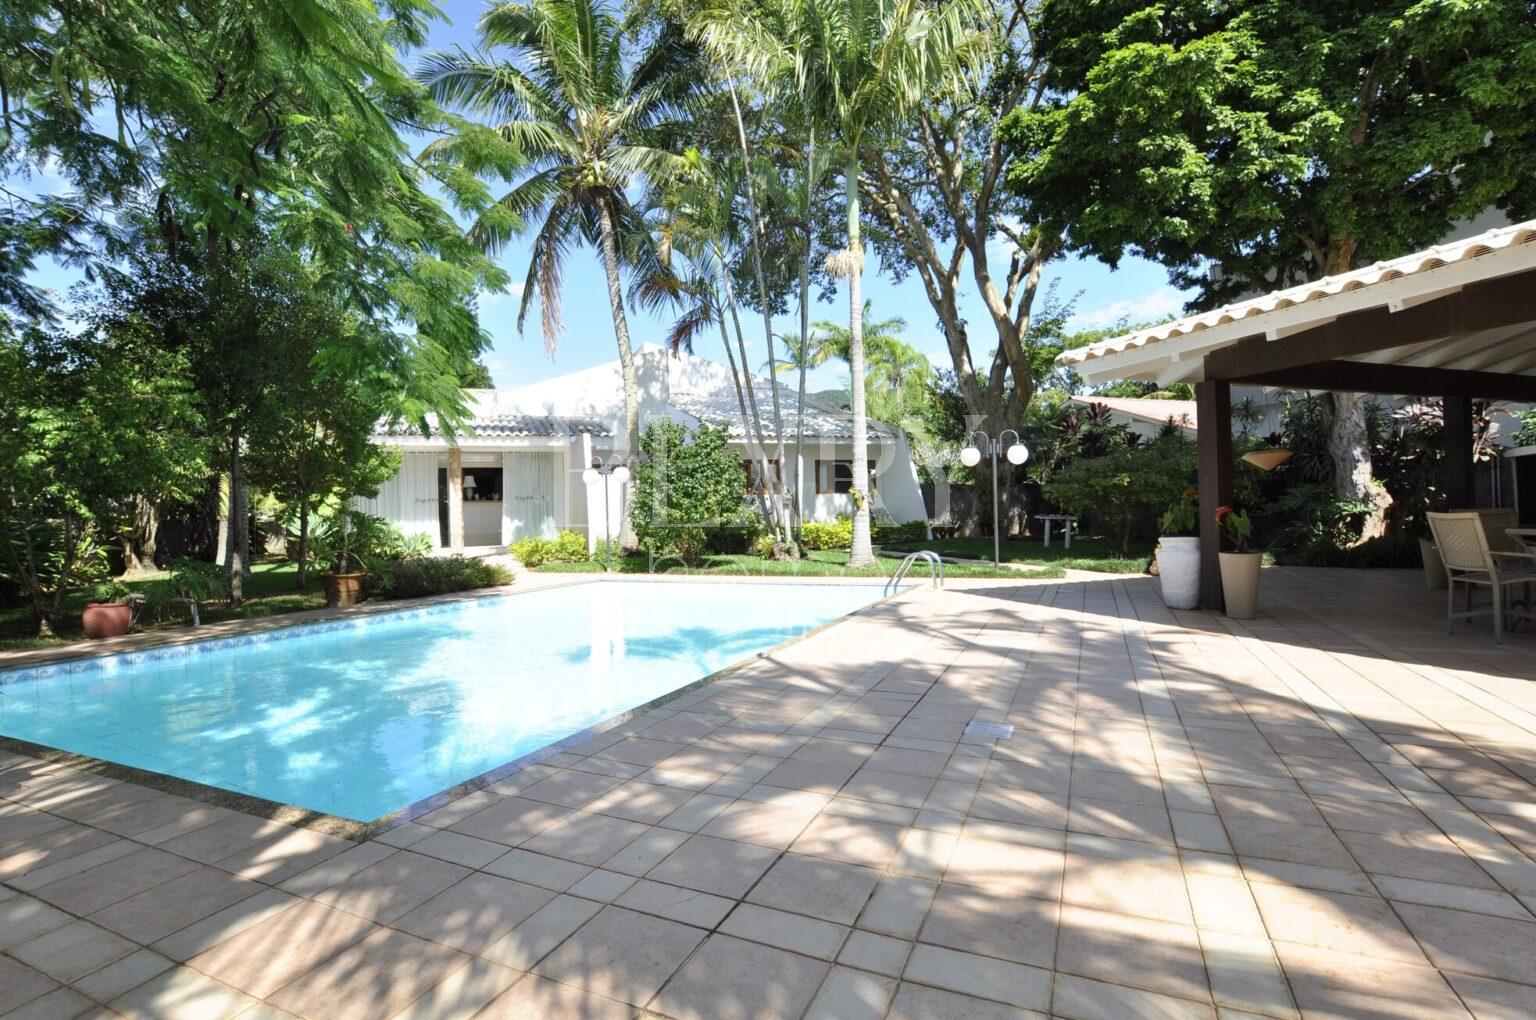 Casa em Condomínio Fechado na Lagoa da Conceição: com um terreno exclusivo de 1.980m² repleto de paisagismo exuberante.